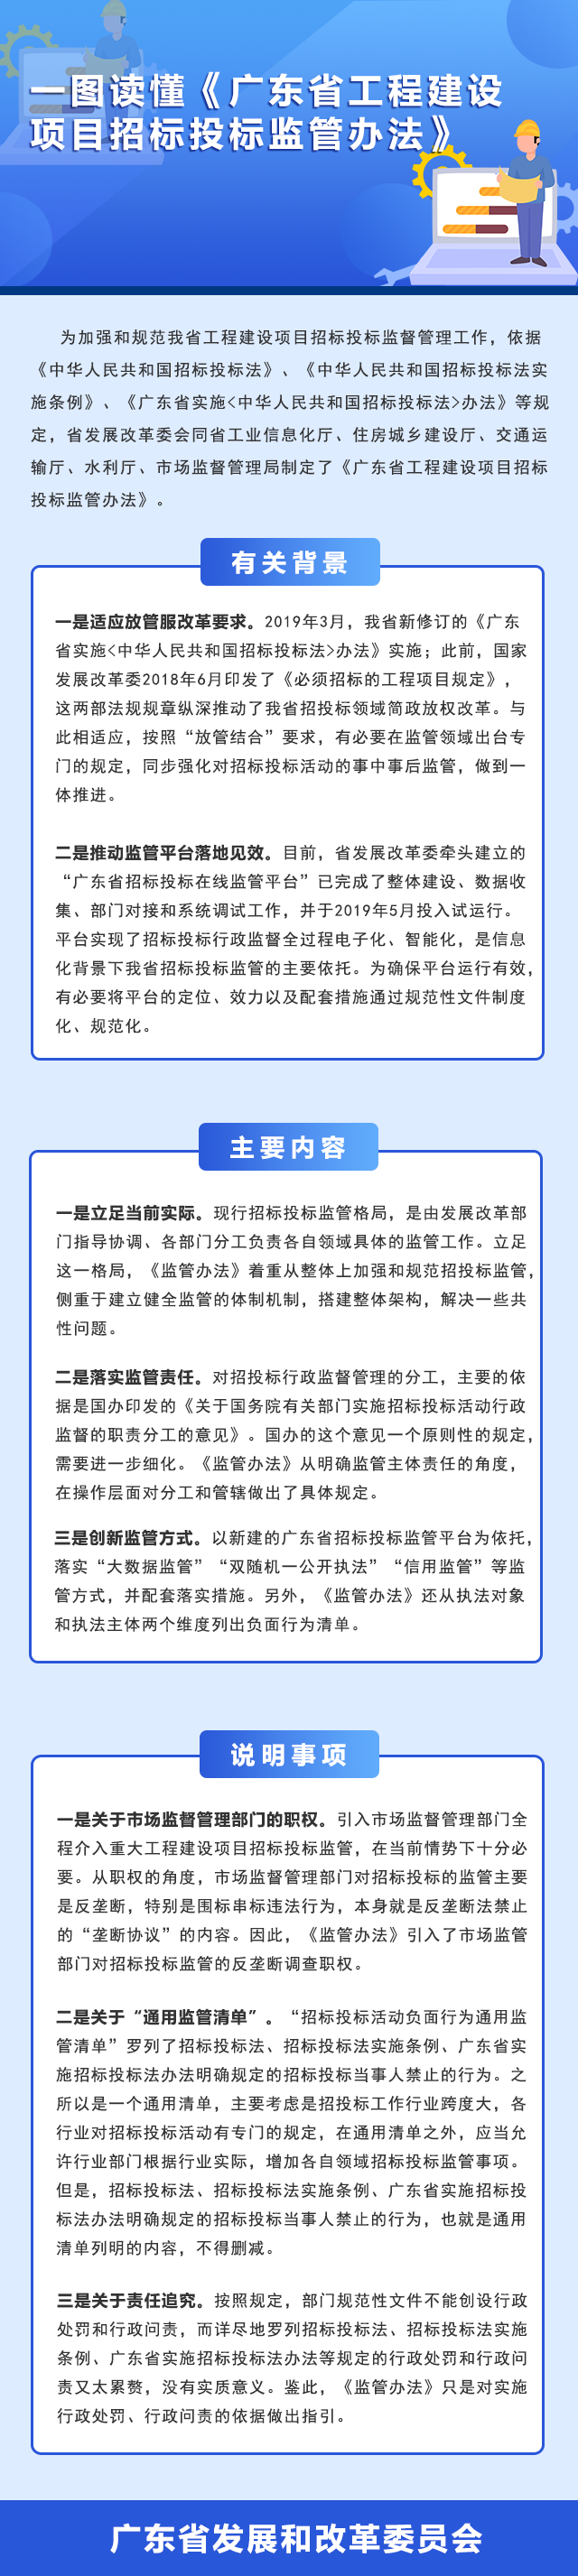 部门图解：《广东省工程建设项目招标投标监管办法》政策解读.png